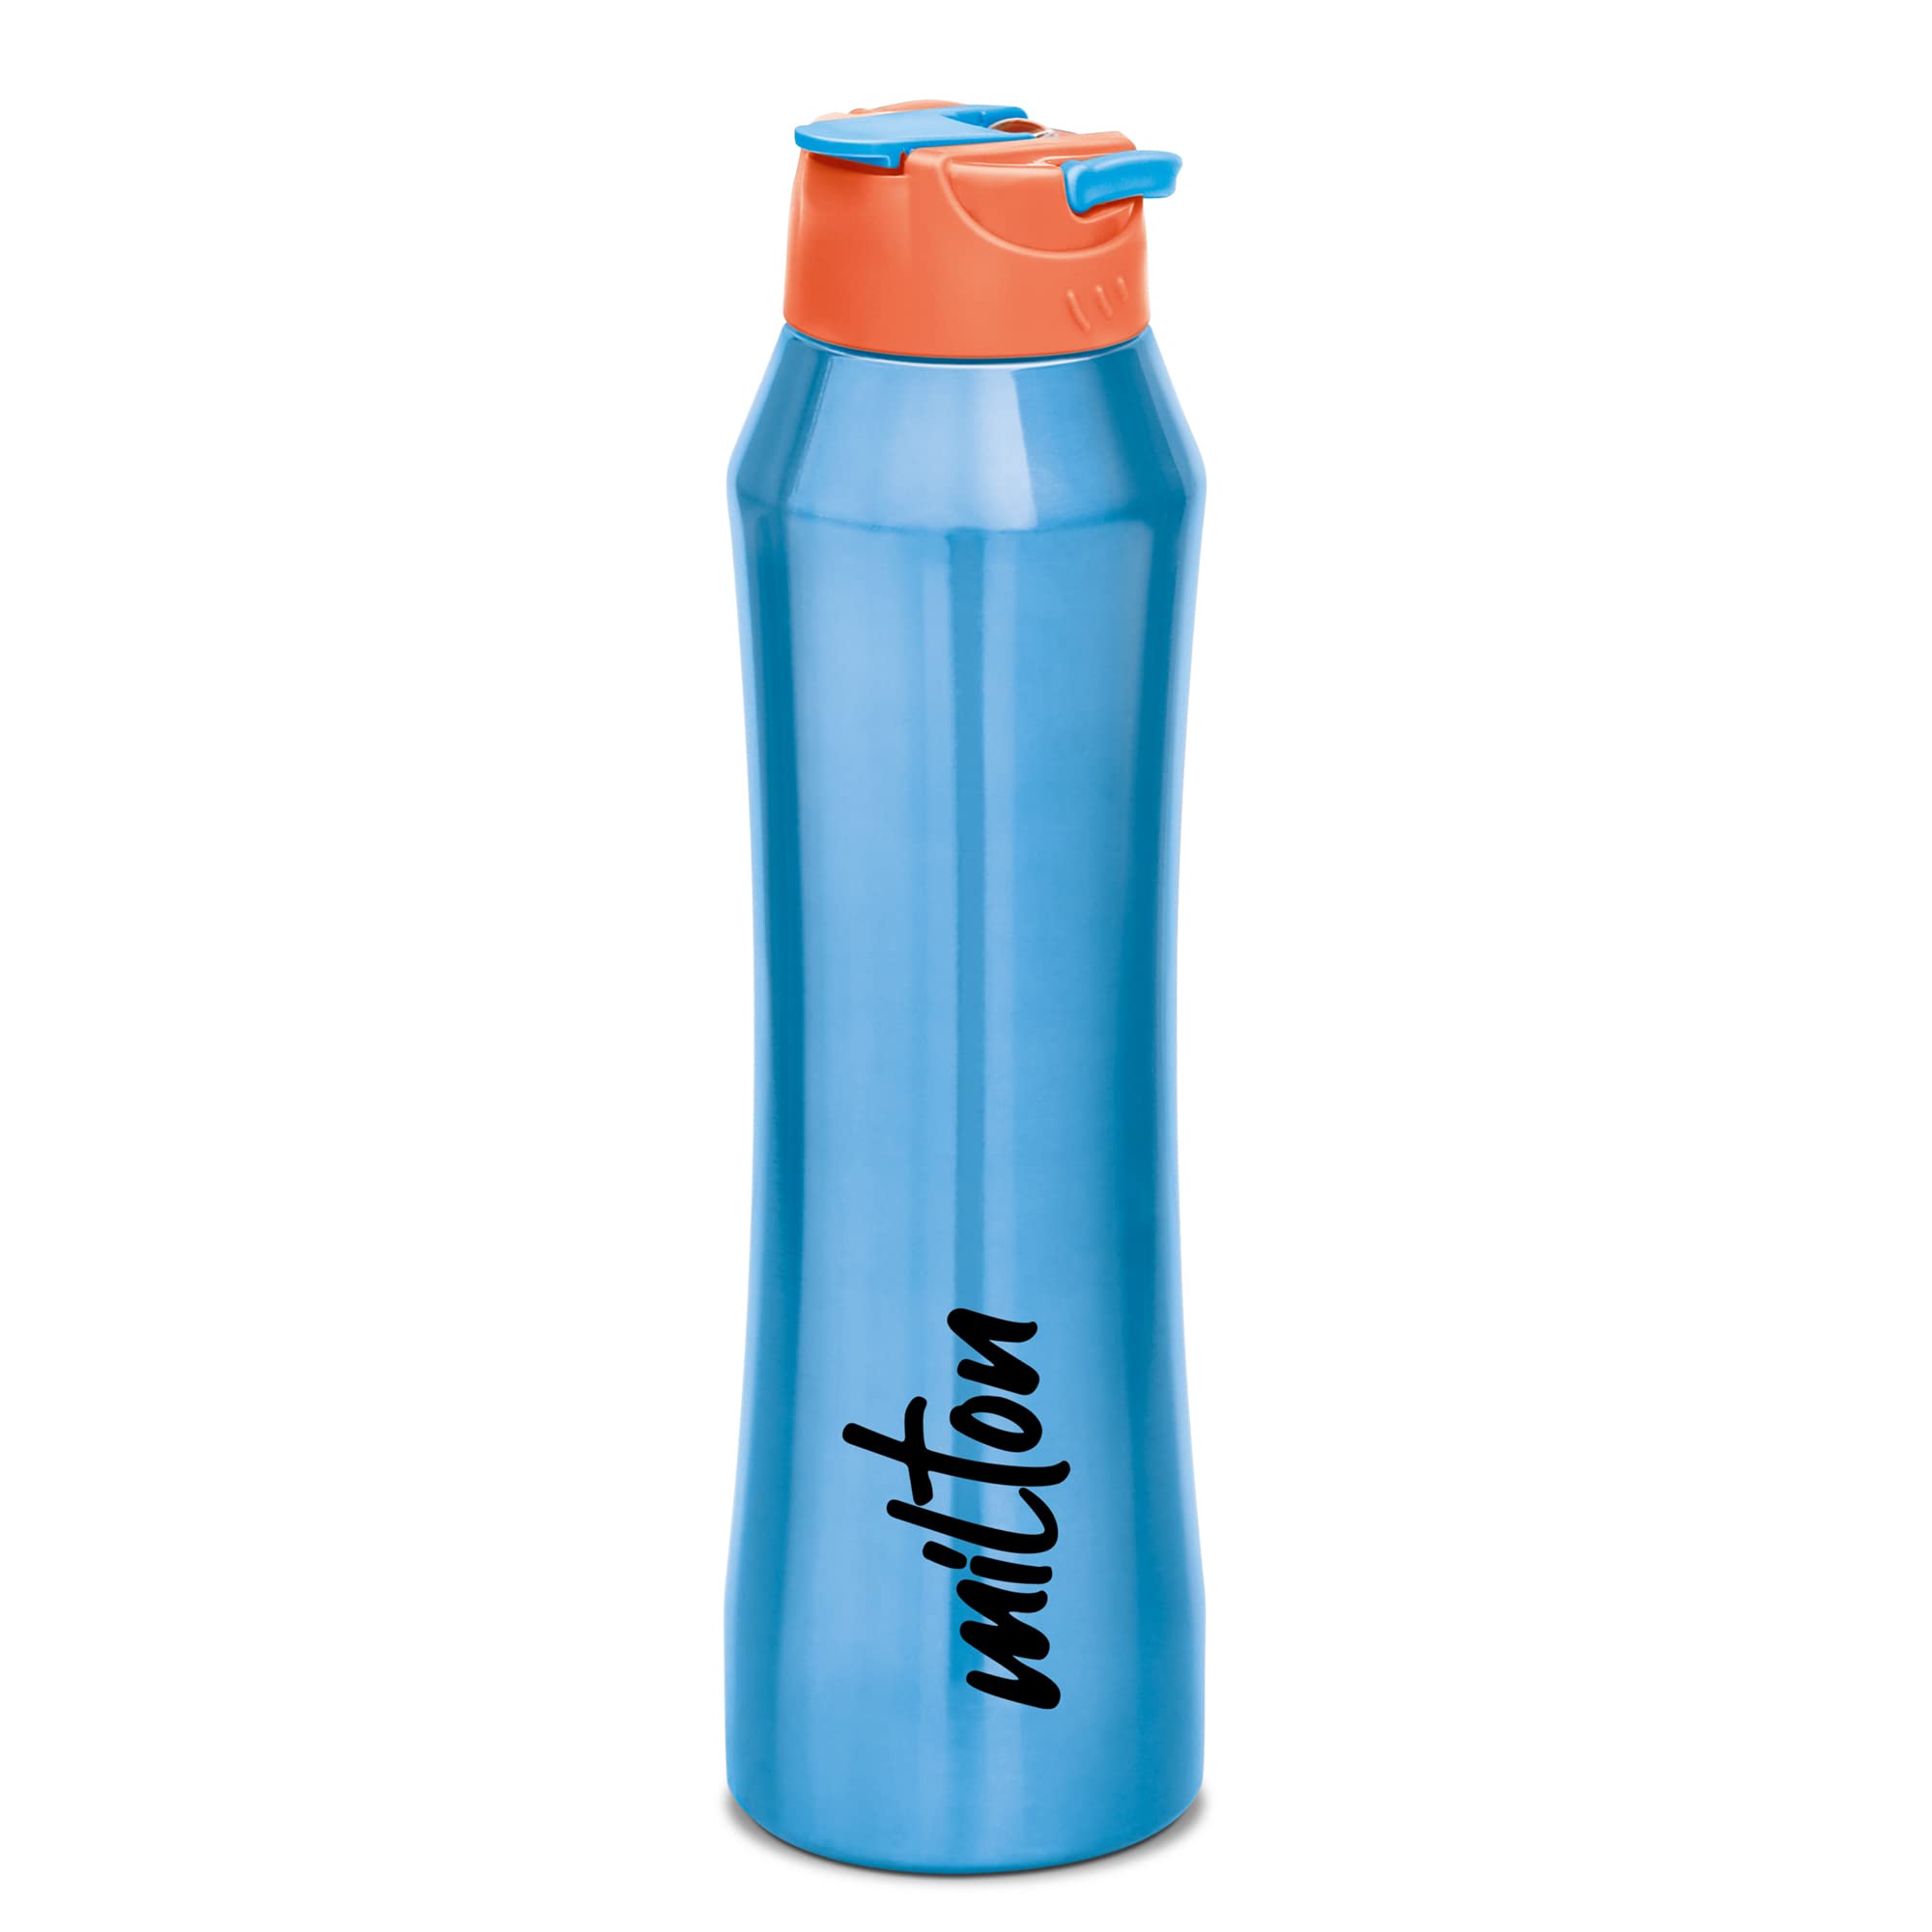 milton sipper water bottle